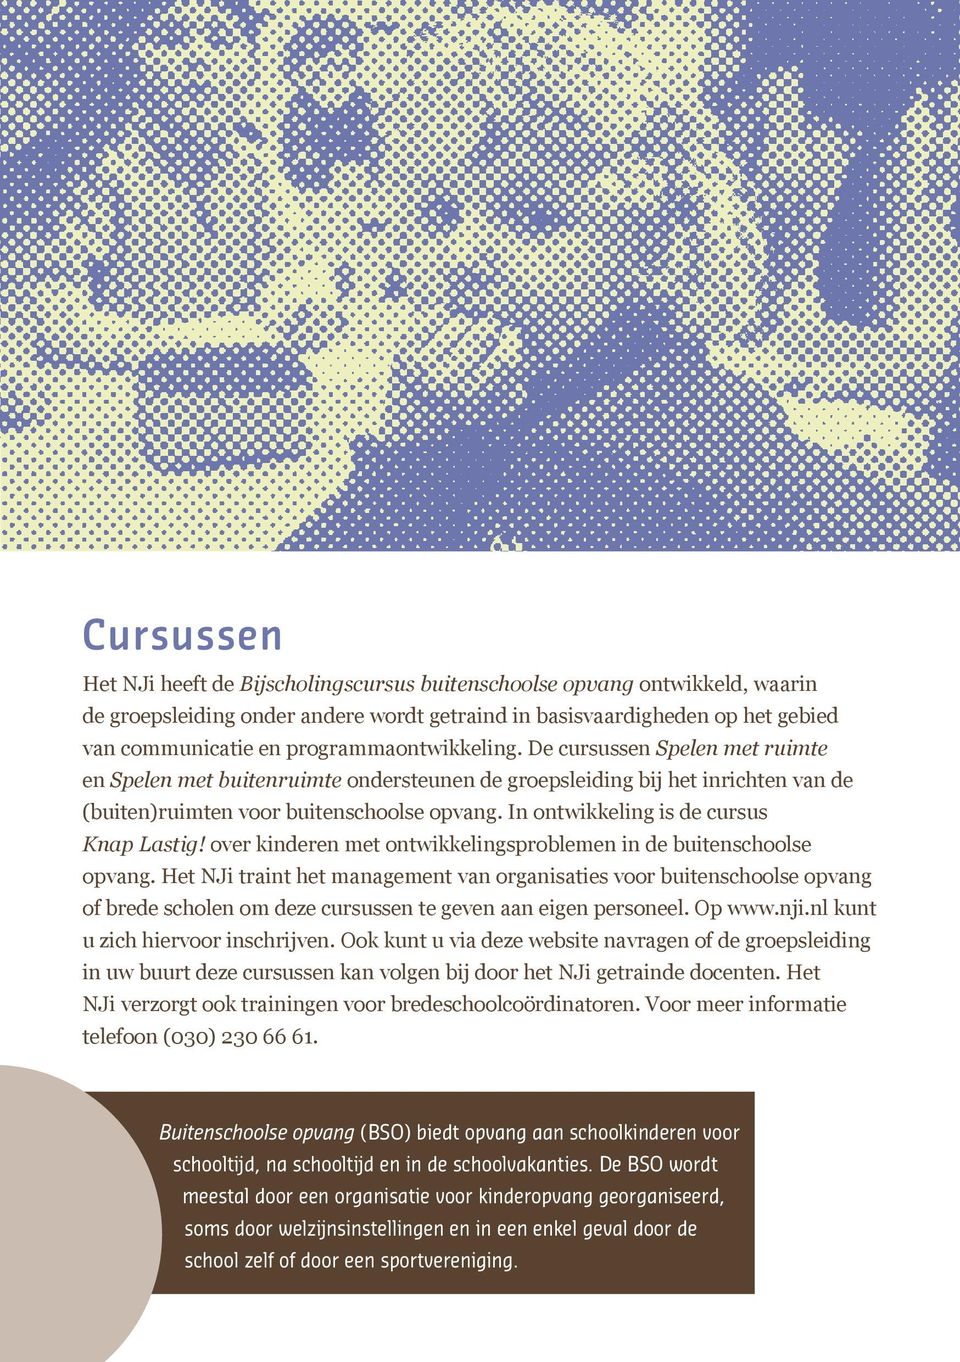 In ontwikkeling is de cursus Knap Lastig! over kinderen met ontwikkelingsproblemen in de buitenschoolse opvang.